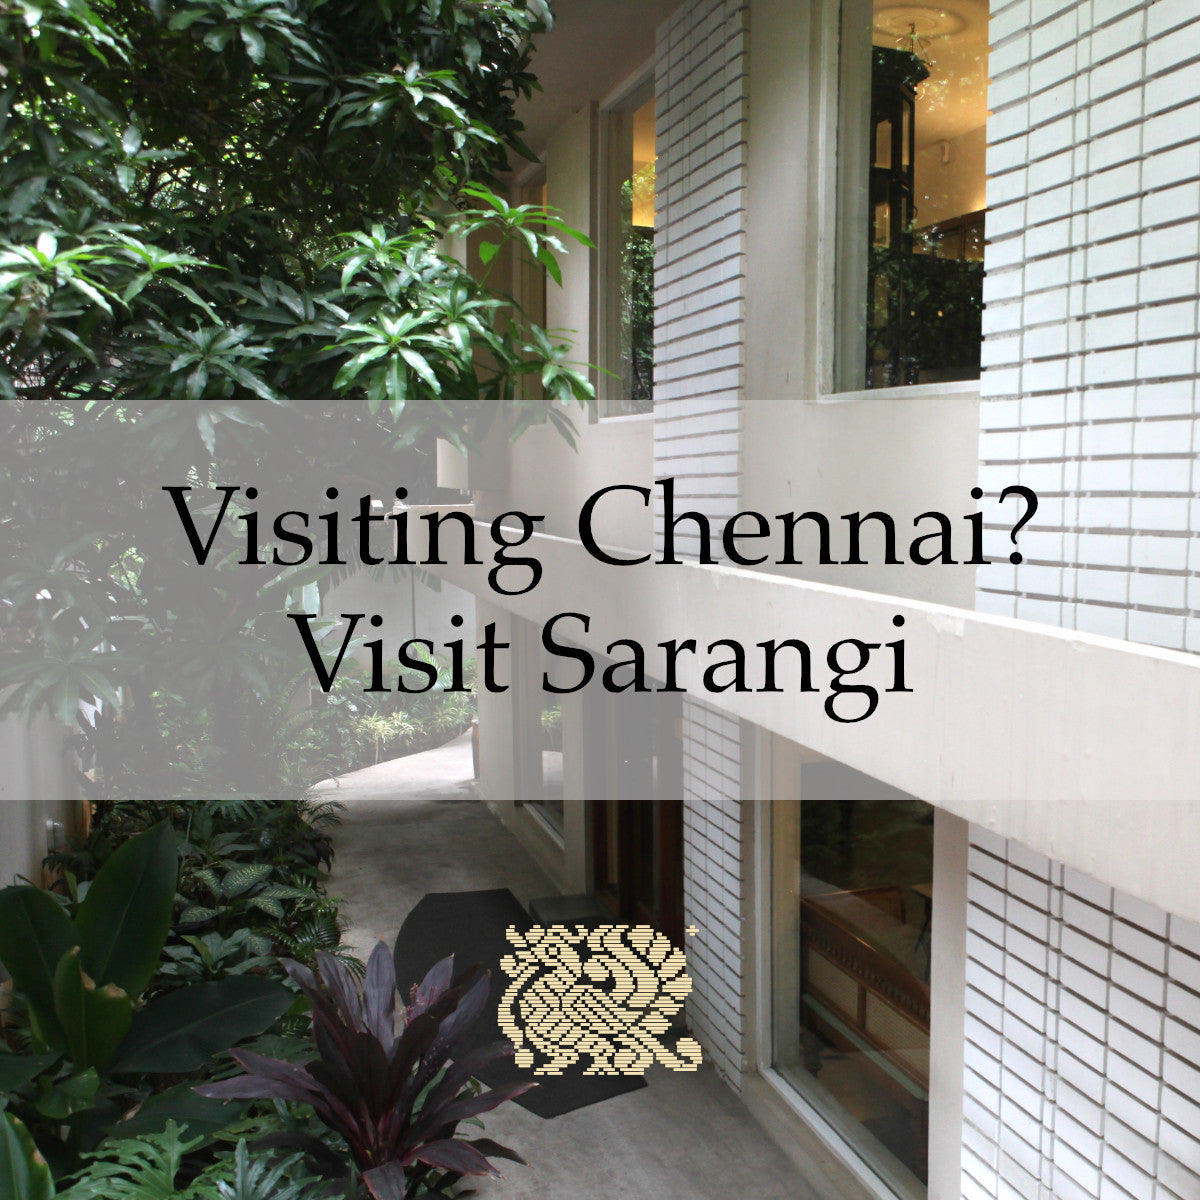 Visiting Chennai? Visit Sarangi